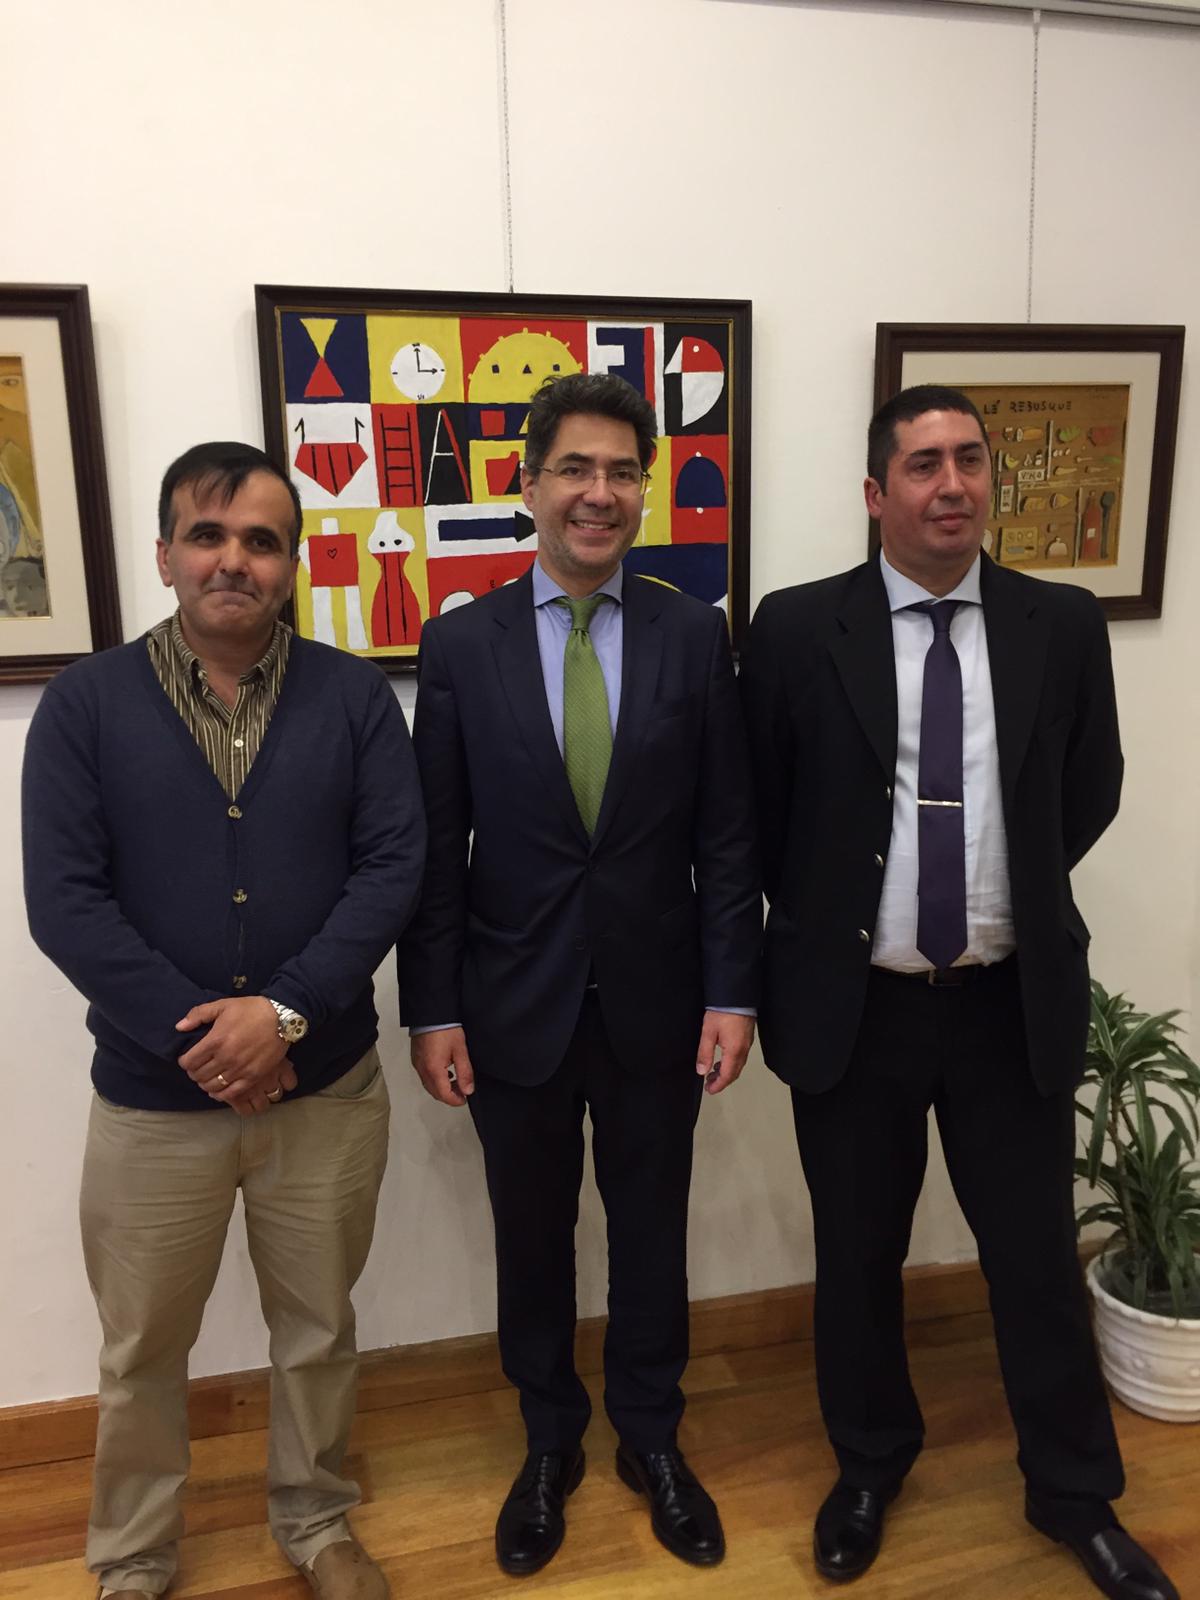 Nicolás Bentancor, Consejero Cultural de la Embajada de España Luis Romera Pintor, y Edgardo Lopardo, en la apertura de la exposición en el ICE